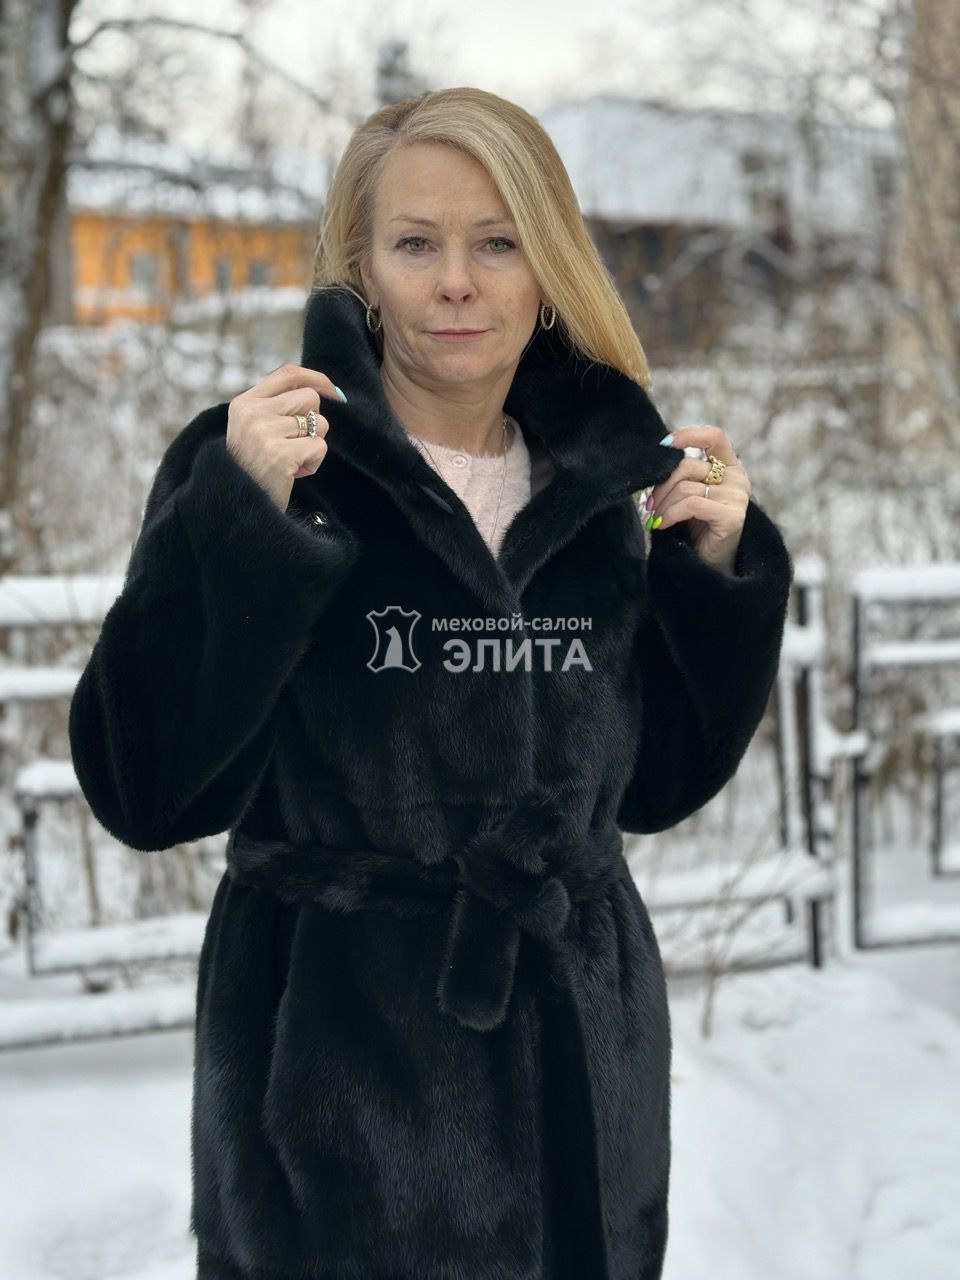 Пальто из норки S 1818 р-р 44-50, цена 187000 рублей в интернет-магазине кожи и меха ЭЛИТА. Вид 2